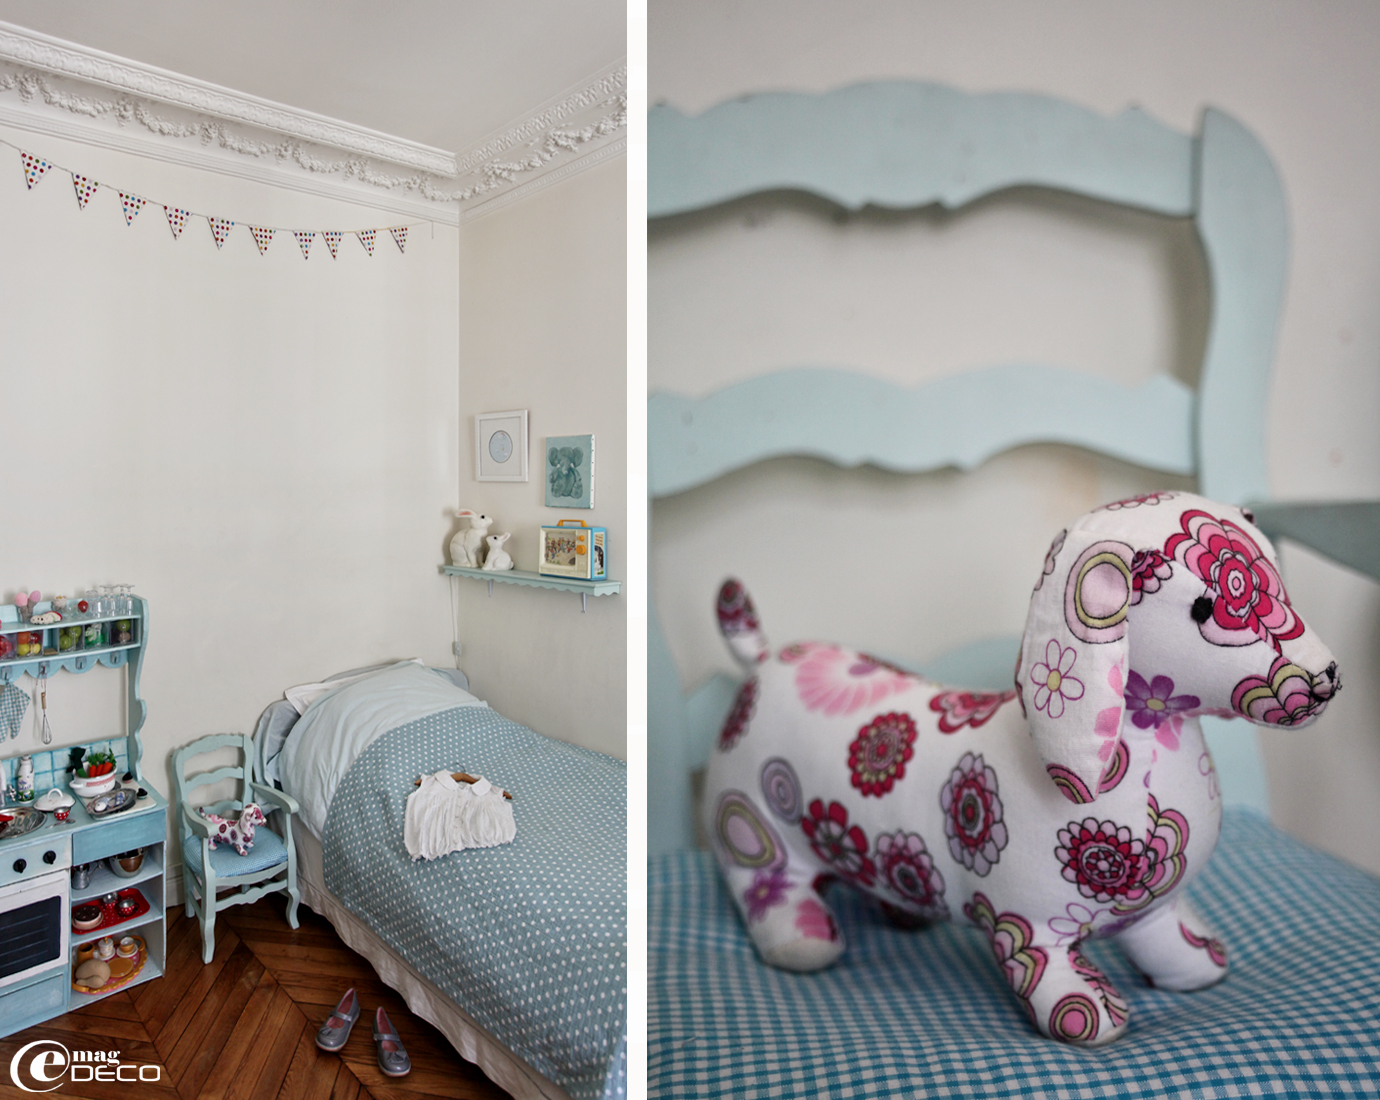 Anne Loiseau, créatrice styliste à Paris, aime décoré les chambres d'enfant avec beaucoup de ses créations en tissu, crochet, feutrine